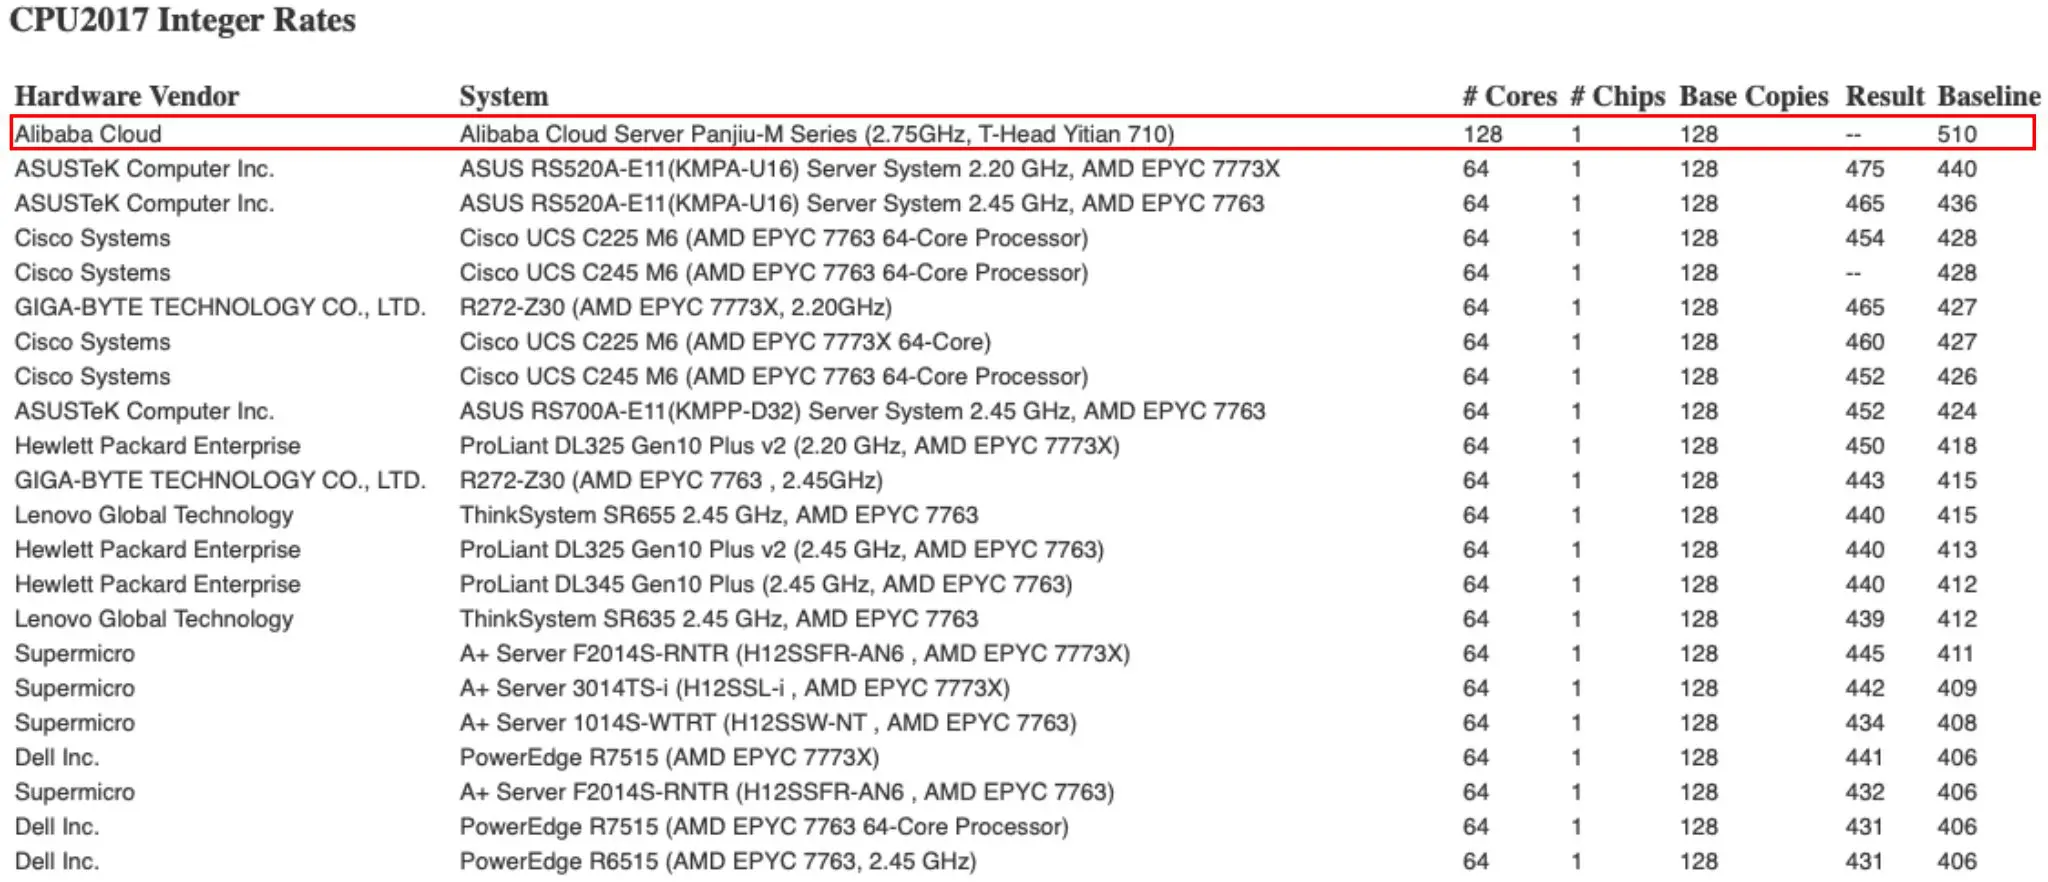 CPU Ỷ Thiên 710 của Trung Quốc mạnh hơn AMD EPYC 7773X với bài test tính số nguyên